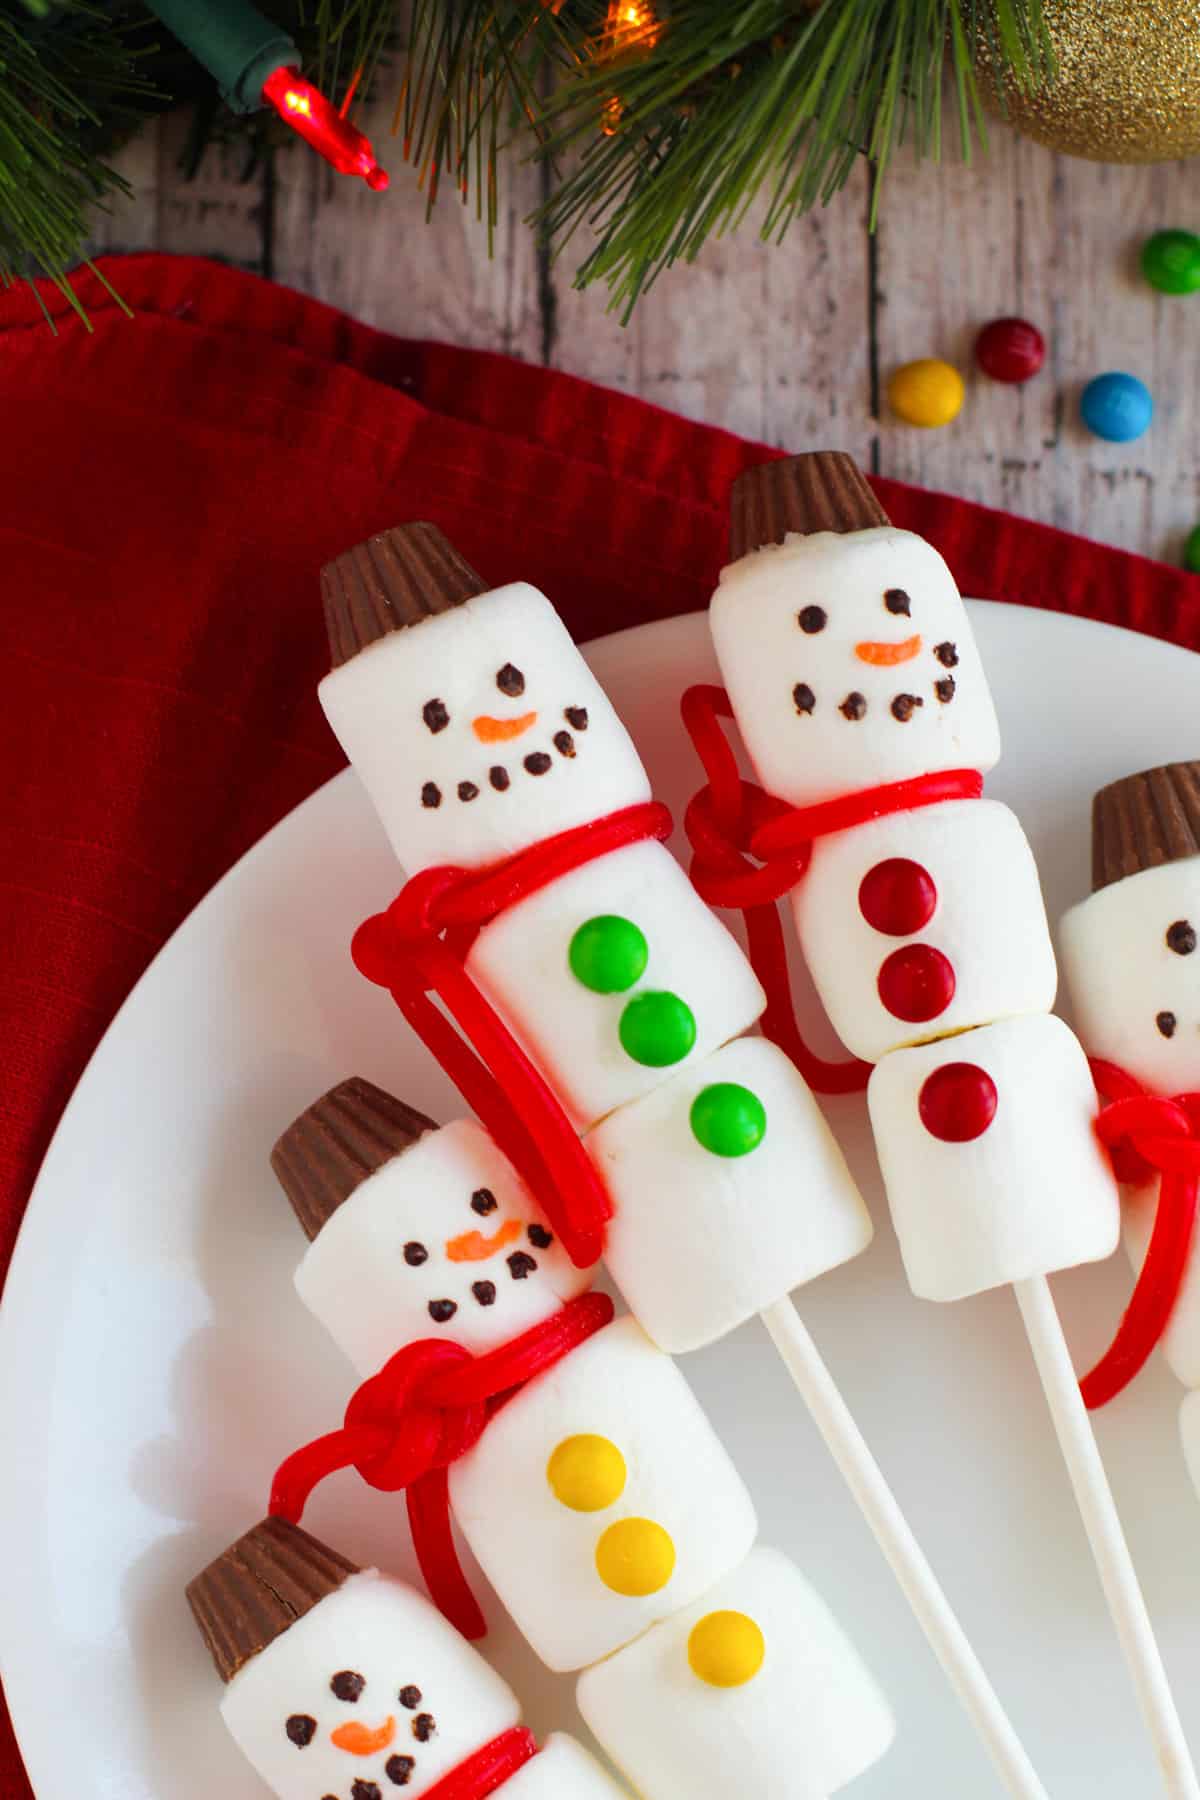 Snowman marshmallow treats on sticks.